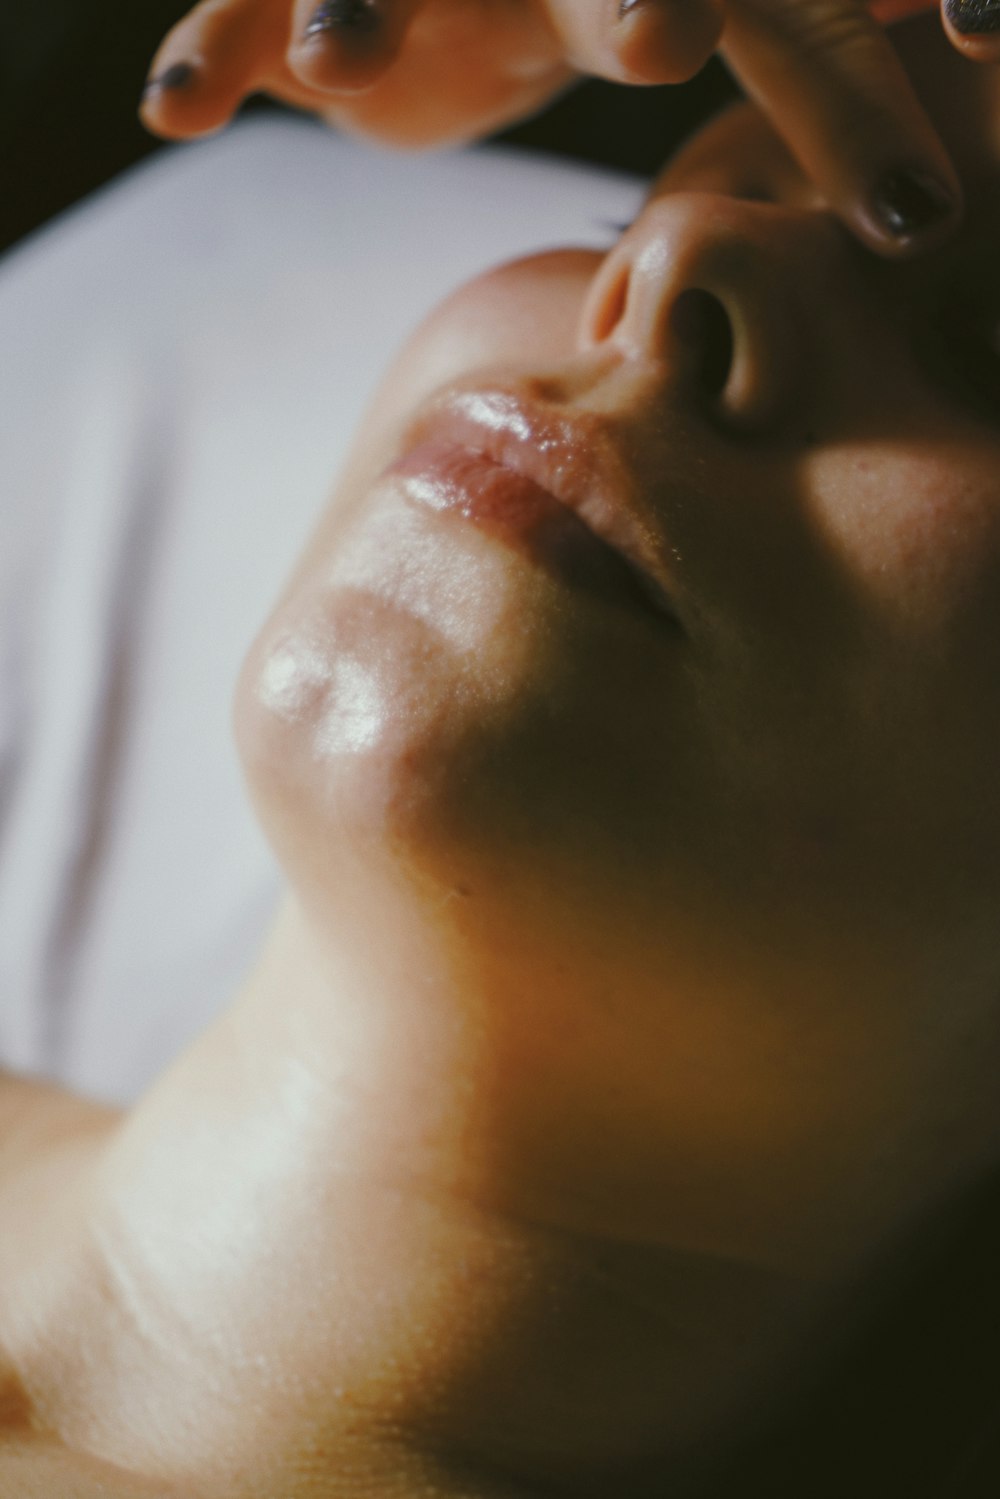 una mujer recibiendo un masaje facial en la cara